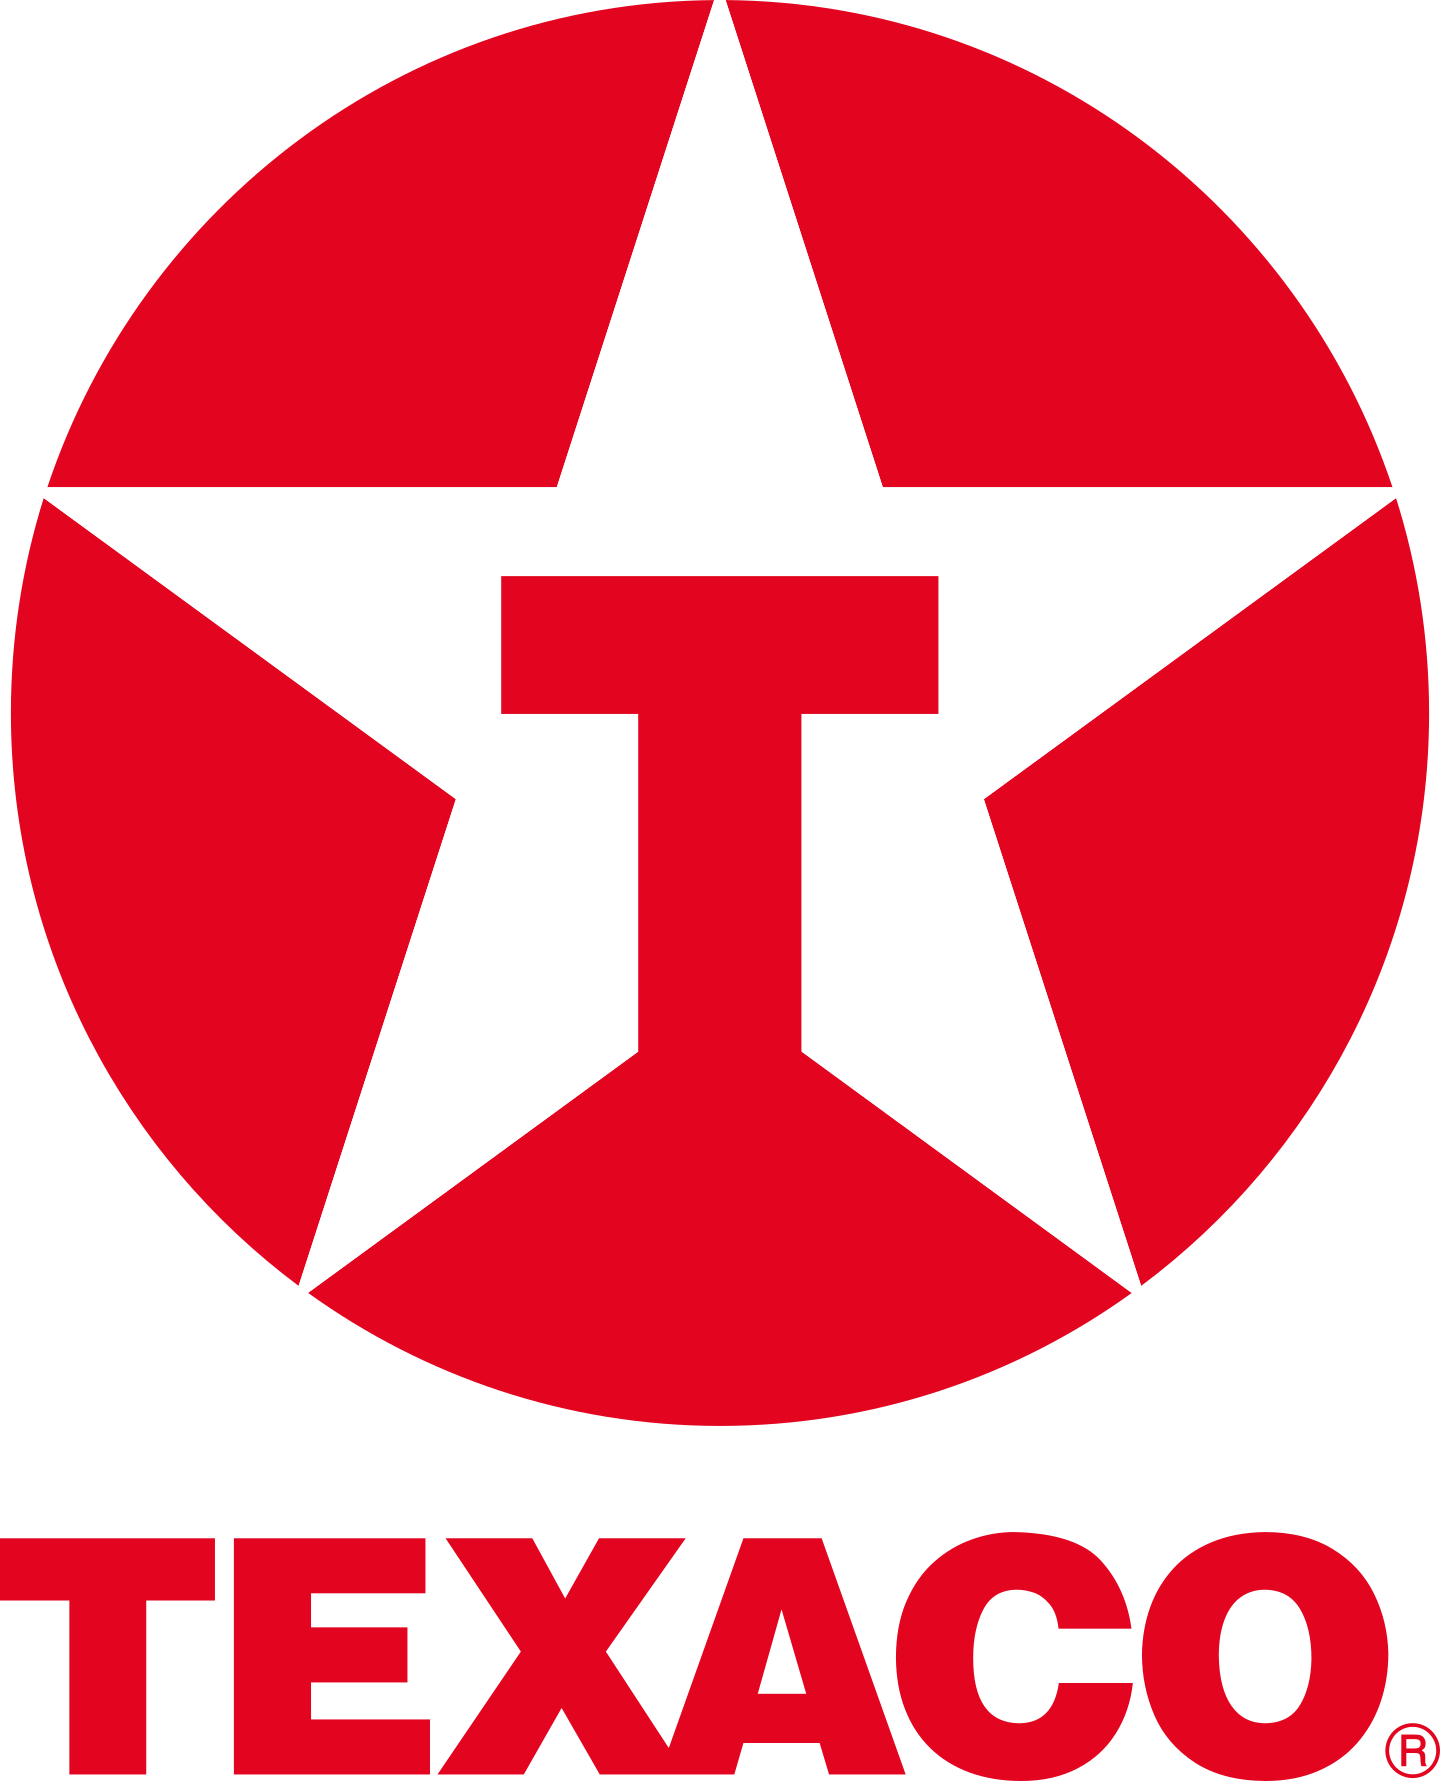 texaco logo 3 - Texaco Logo